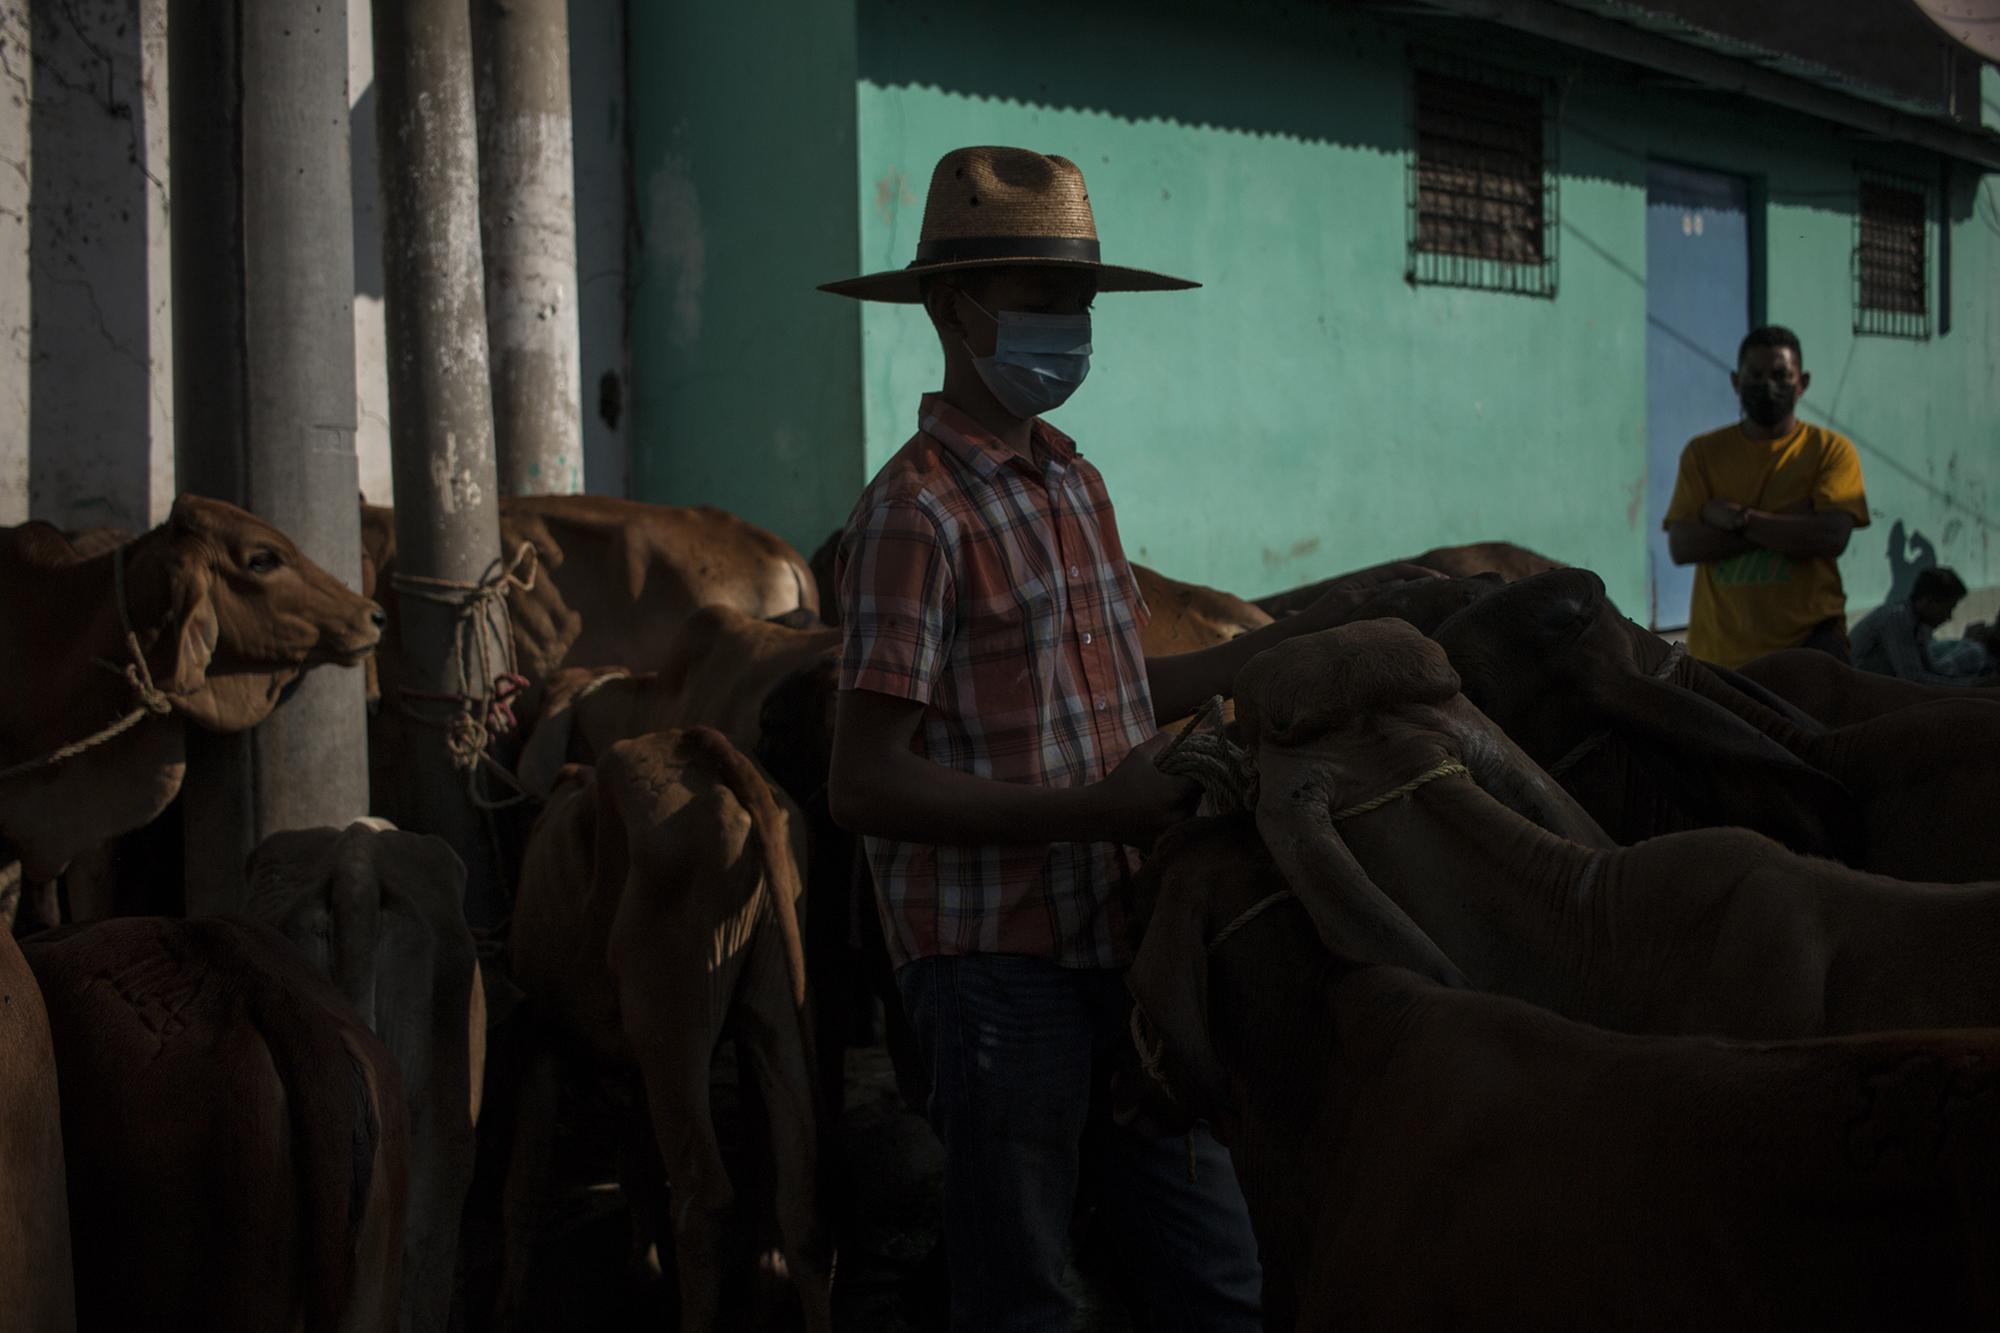 Josué Castro, de 15 años  es un comerciante de ganado. Todos los sábados llega con su padre para vender y comprar. Josué es habitante de la zona rural del municipio de San Rafael Cedros y aprovecha el fin de semana para ganar unos $40, que le abastecen para sus gastos semanales en la escuela.